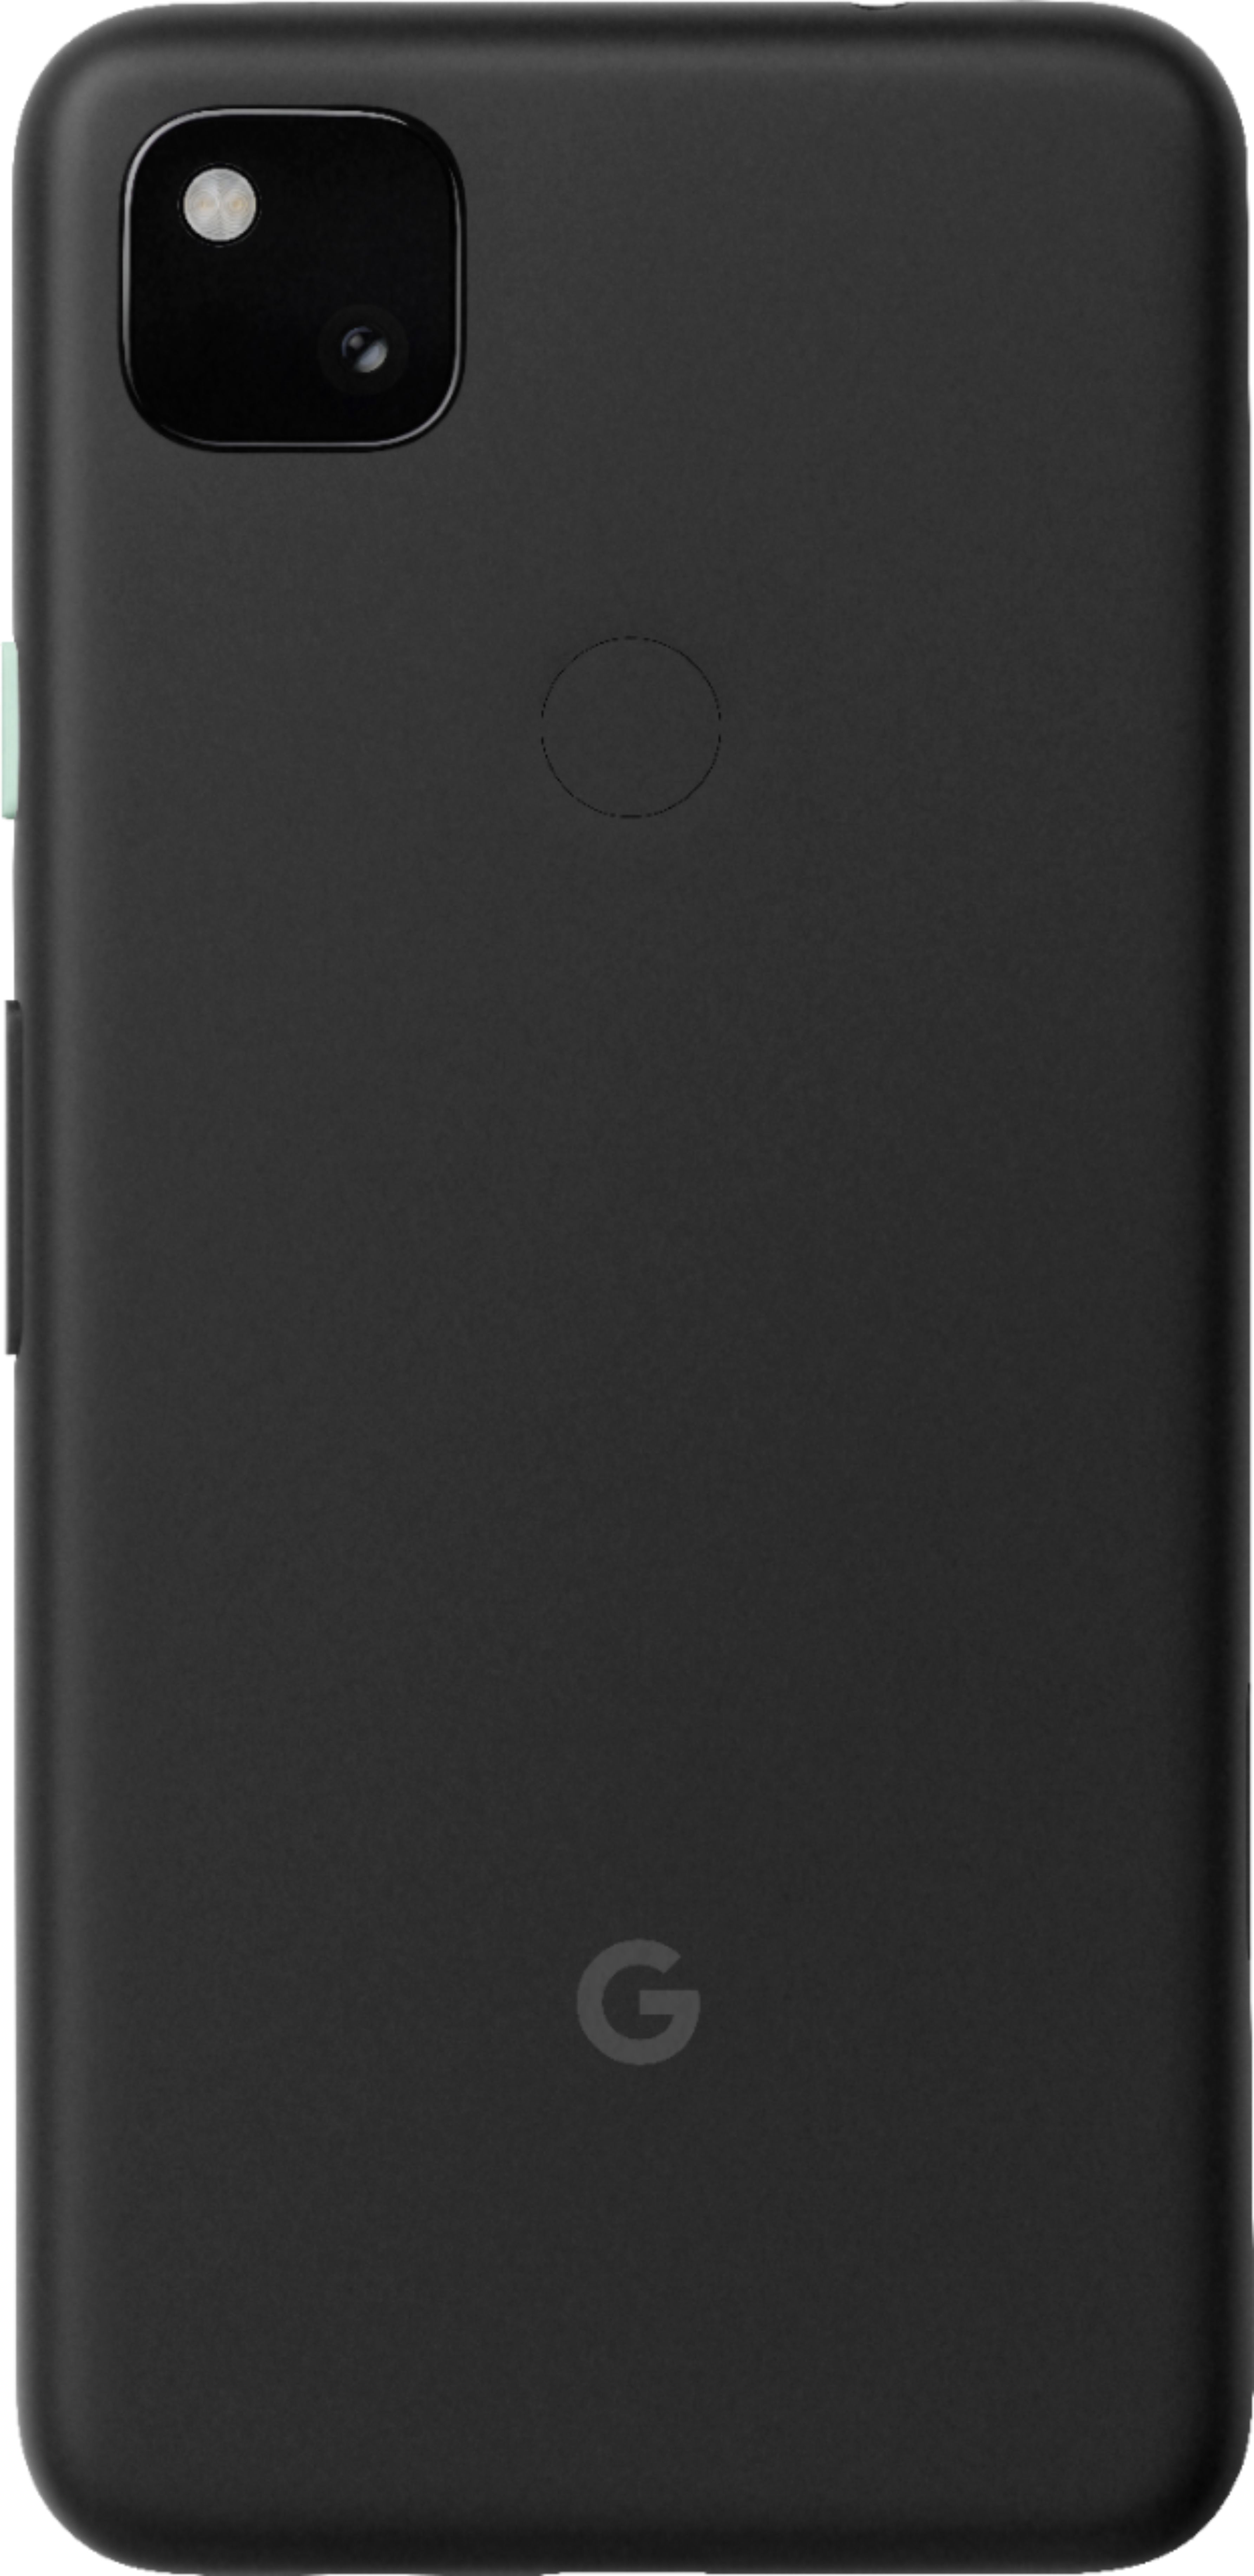 スマートフォン/携帯電話 スマートフォン本体 Google Pixel 4a 128GB Just Black (Verizon) GA01738-US - Best Buy